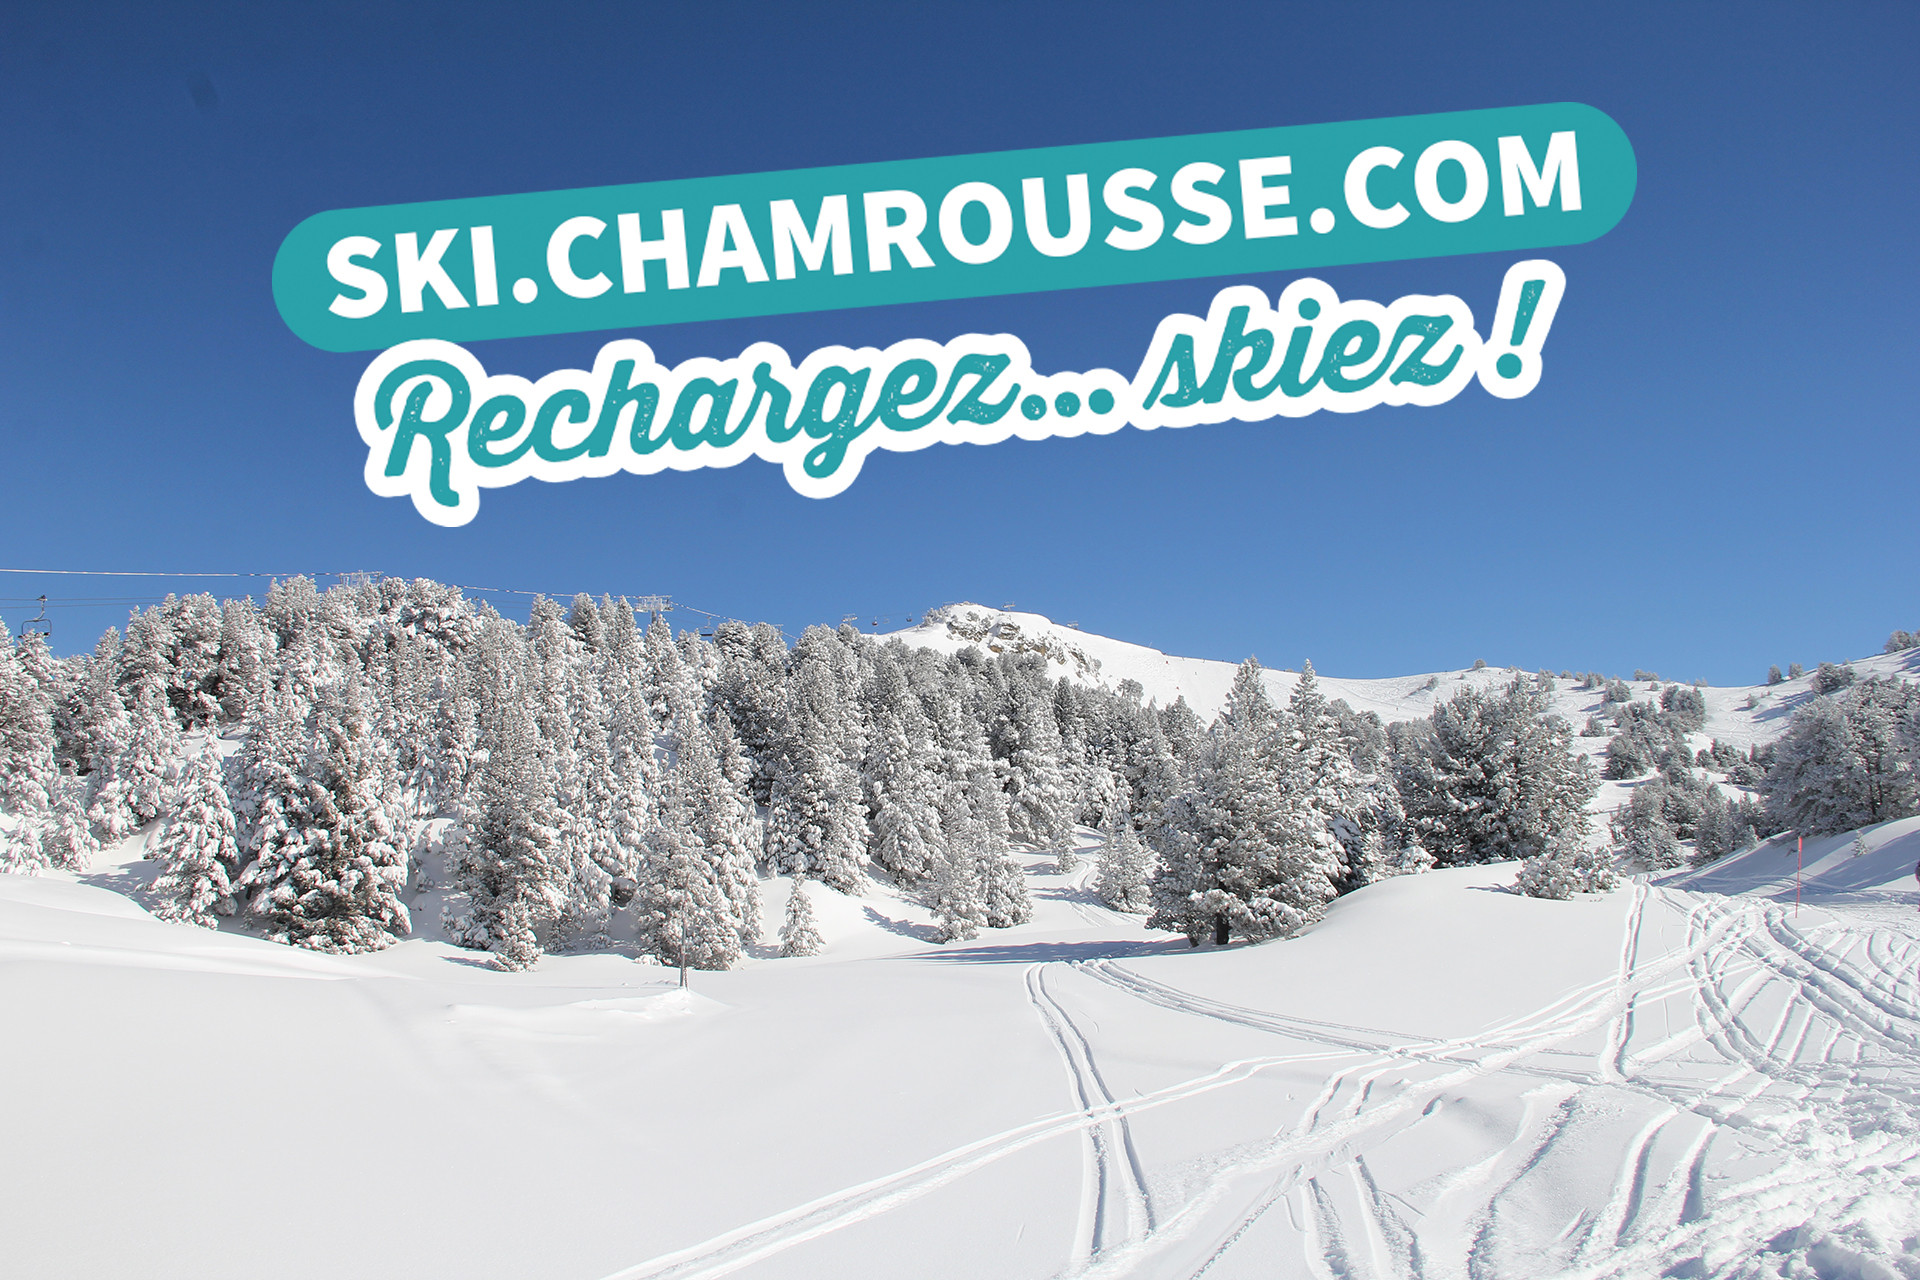 Chamrousse achat forfait ski web promo réduction 8% station montagne grenoble lyon isère alpes france